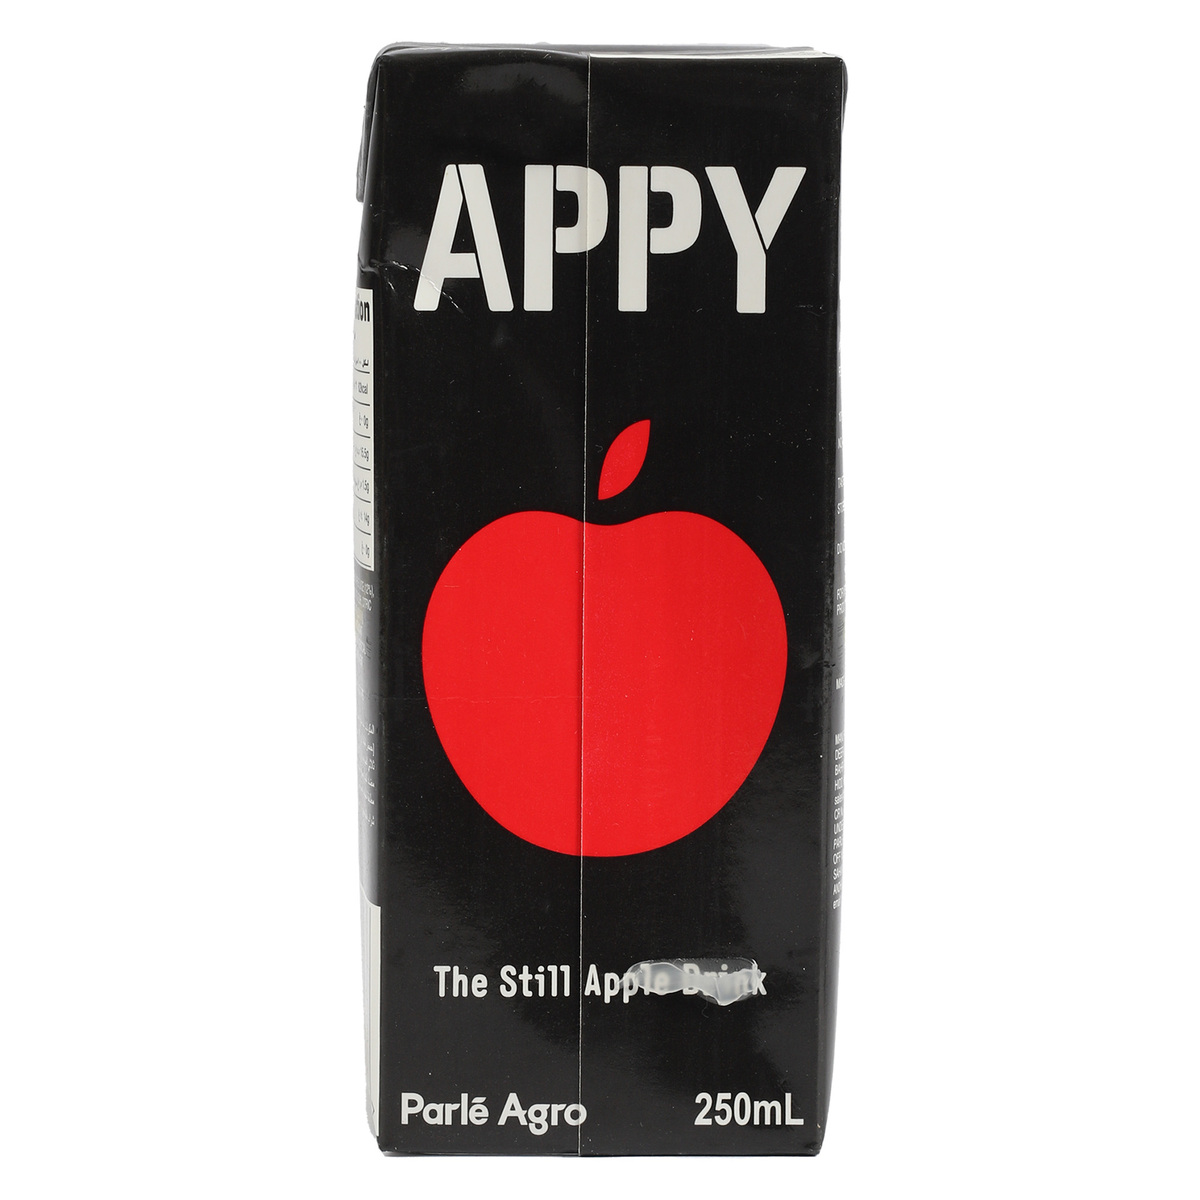 Appy Apple Drink 12 x 250 ml